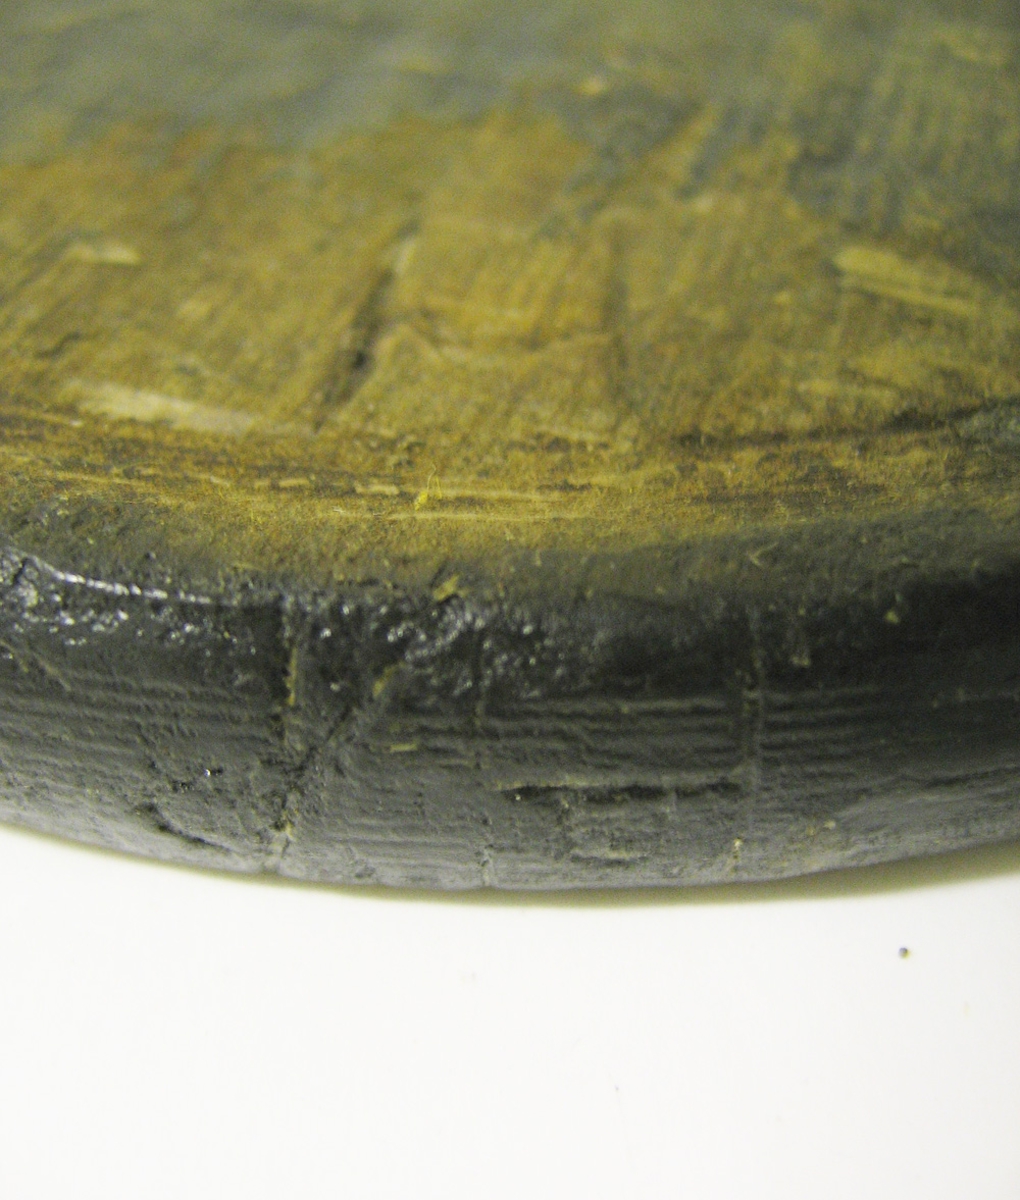 En svarvad disk av trä.
Disken är plan med upphöjda ytterkanter. På ena sidan av disken samt på den yttre kanten sitter två bomärken. På bägge sidor av disken finns tydliga märken i form av skärspår efter en kniv. På disken syns sex små hål.
Disken är välbevarad.

Text in English: A turned wooden platter.
A flat round disc with raised rim. On one side are two owner''s marks inscribed, one is located near the rim. Scored on both sides.
Well preserved except for six small holes.